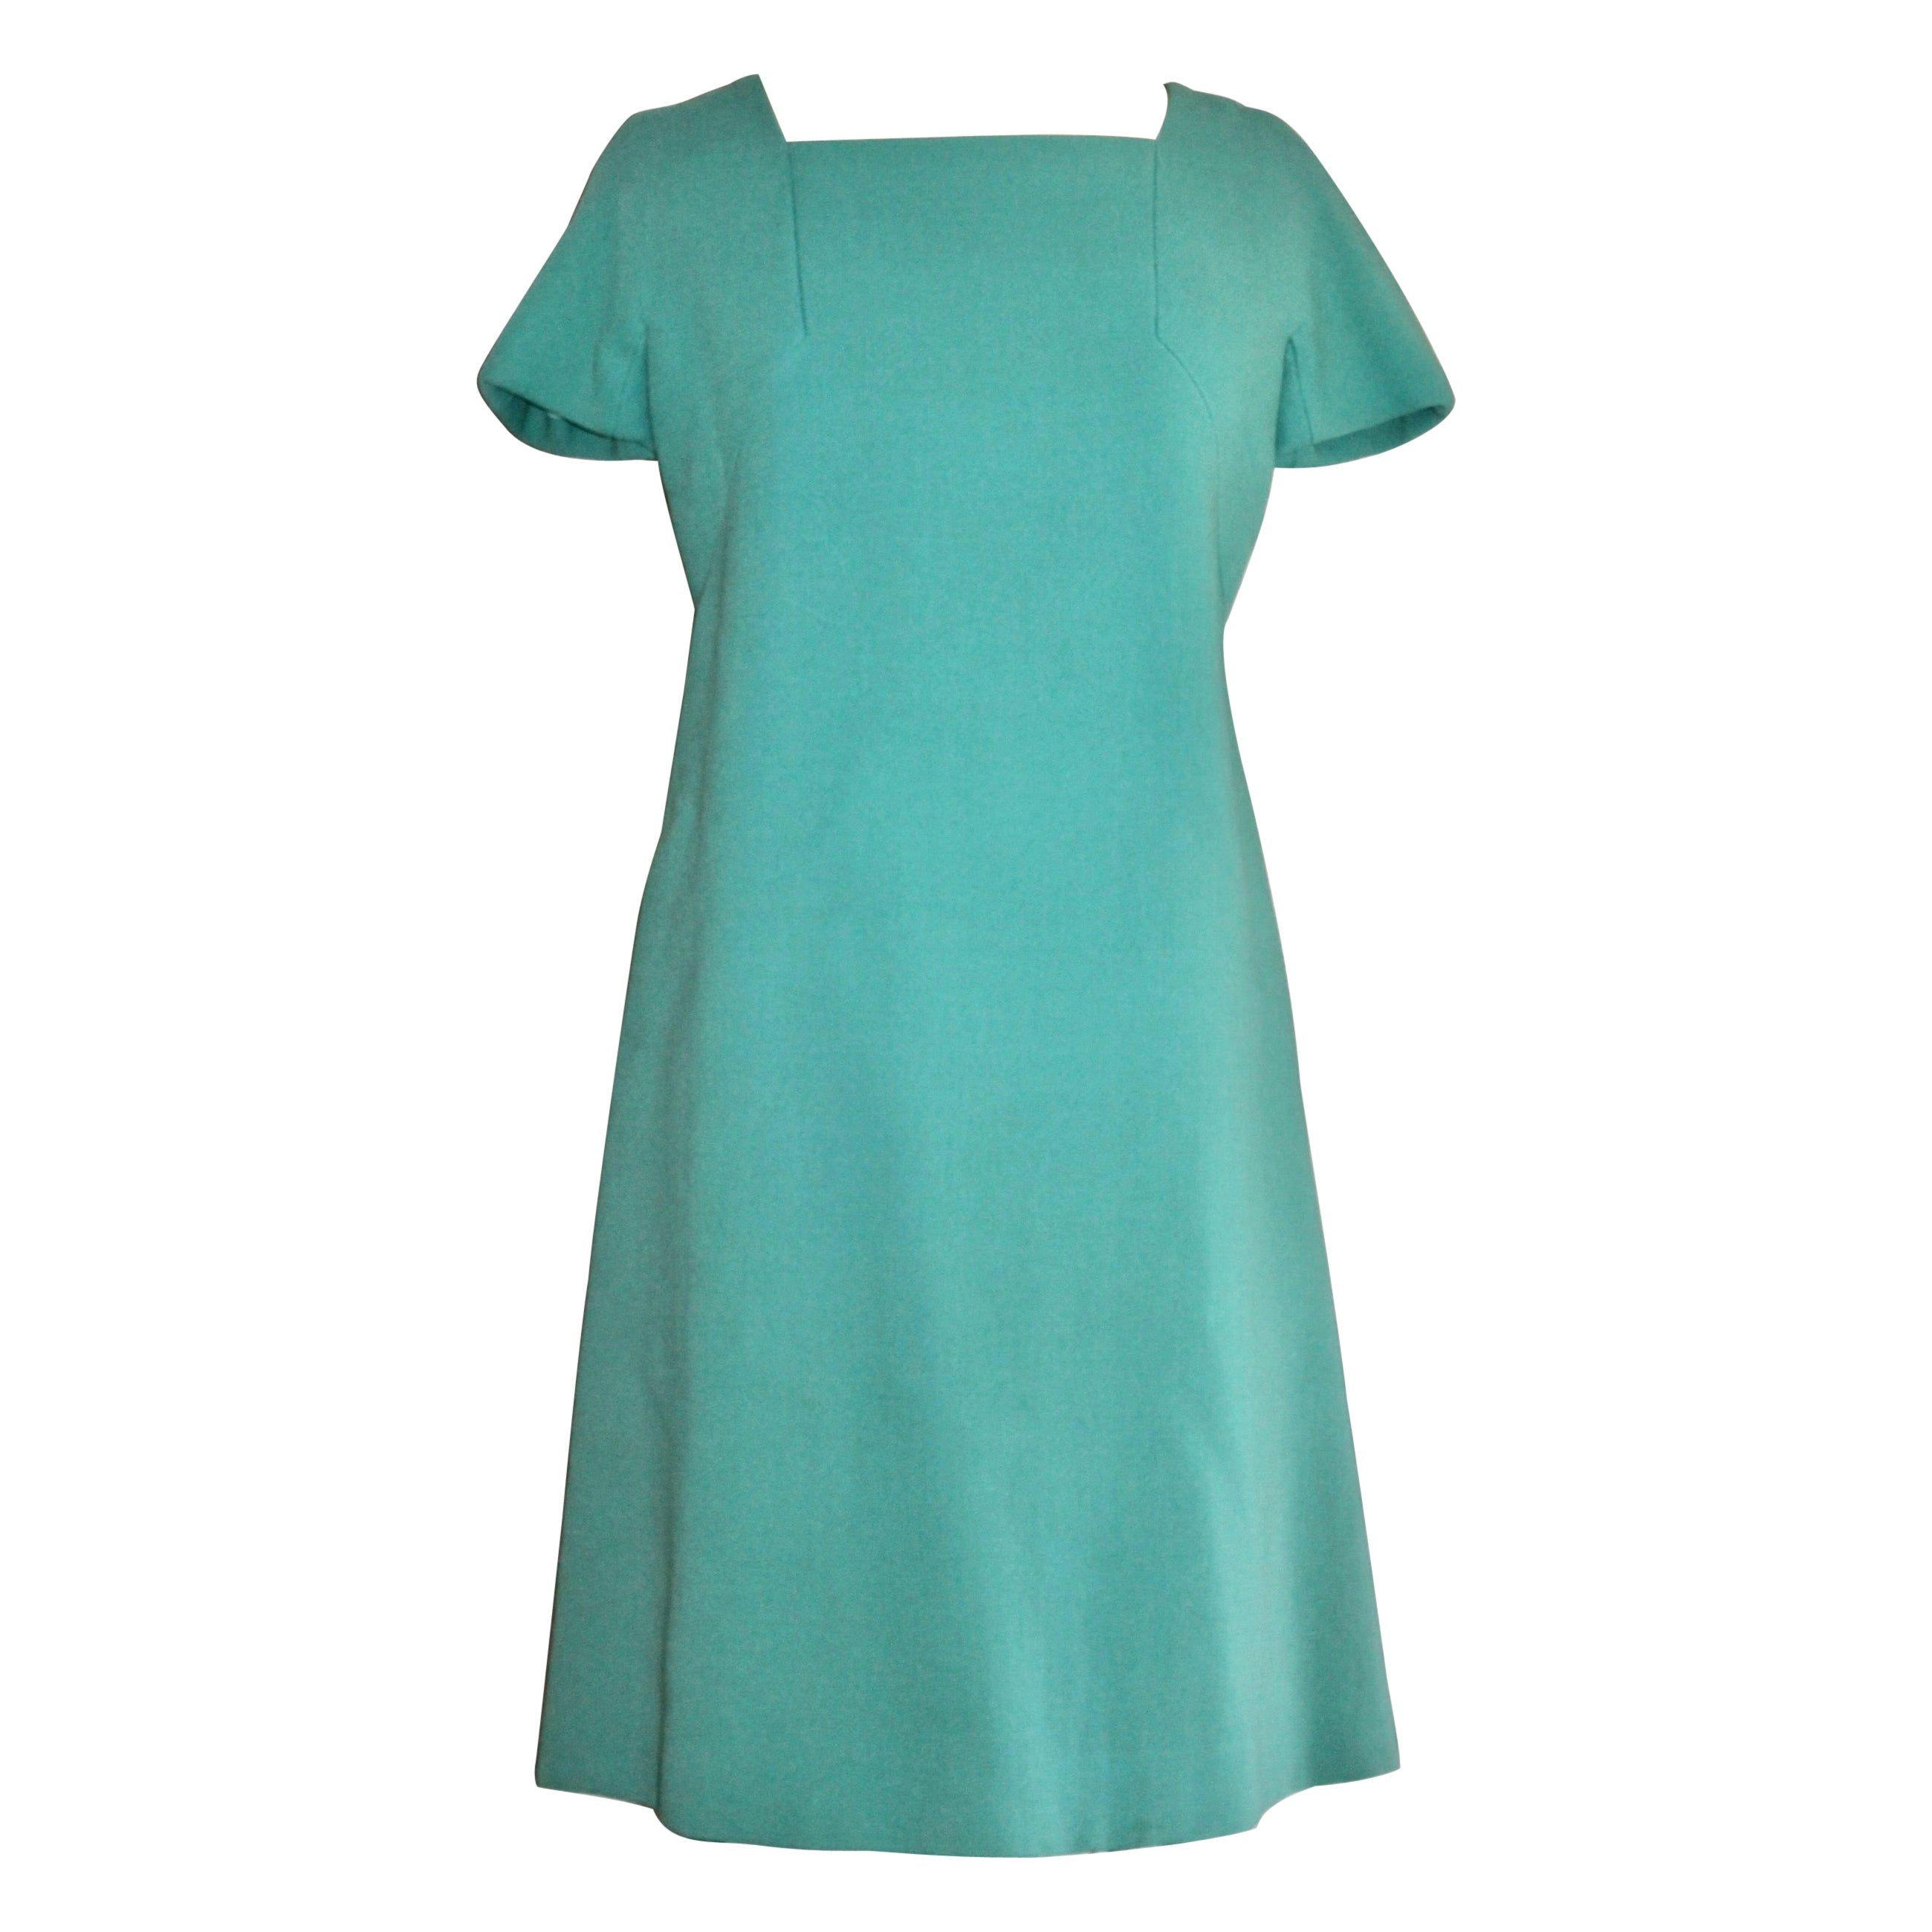 Jean Patou Paris Collection Boutique Green/Blue Day Dress